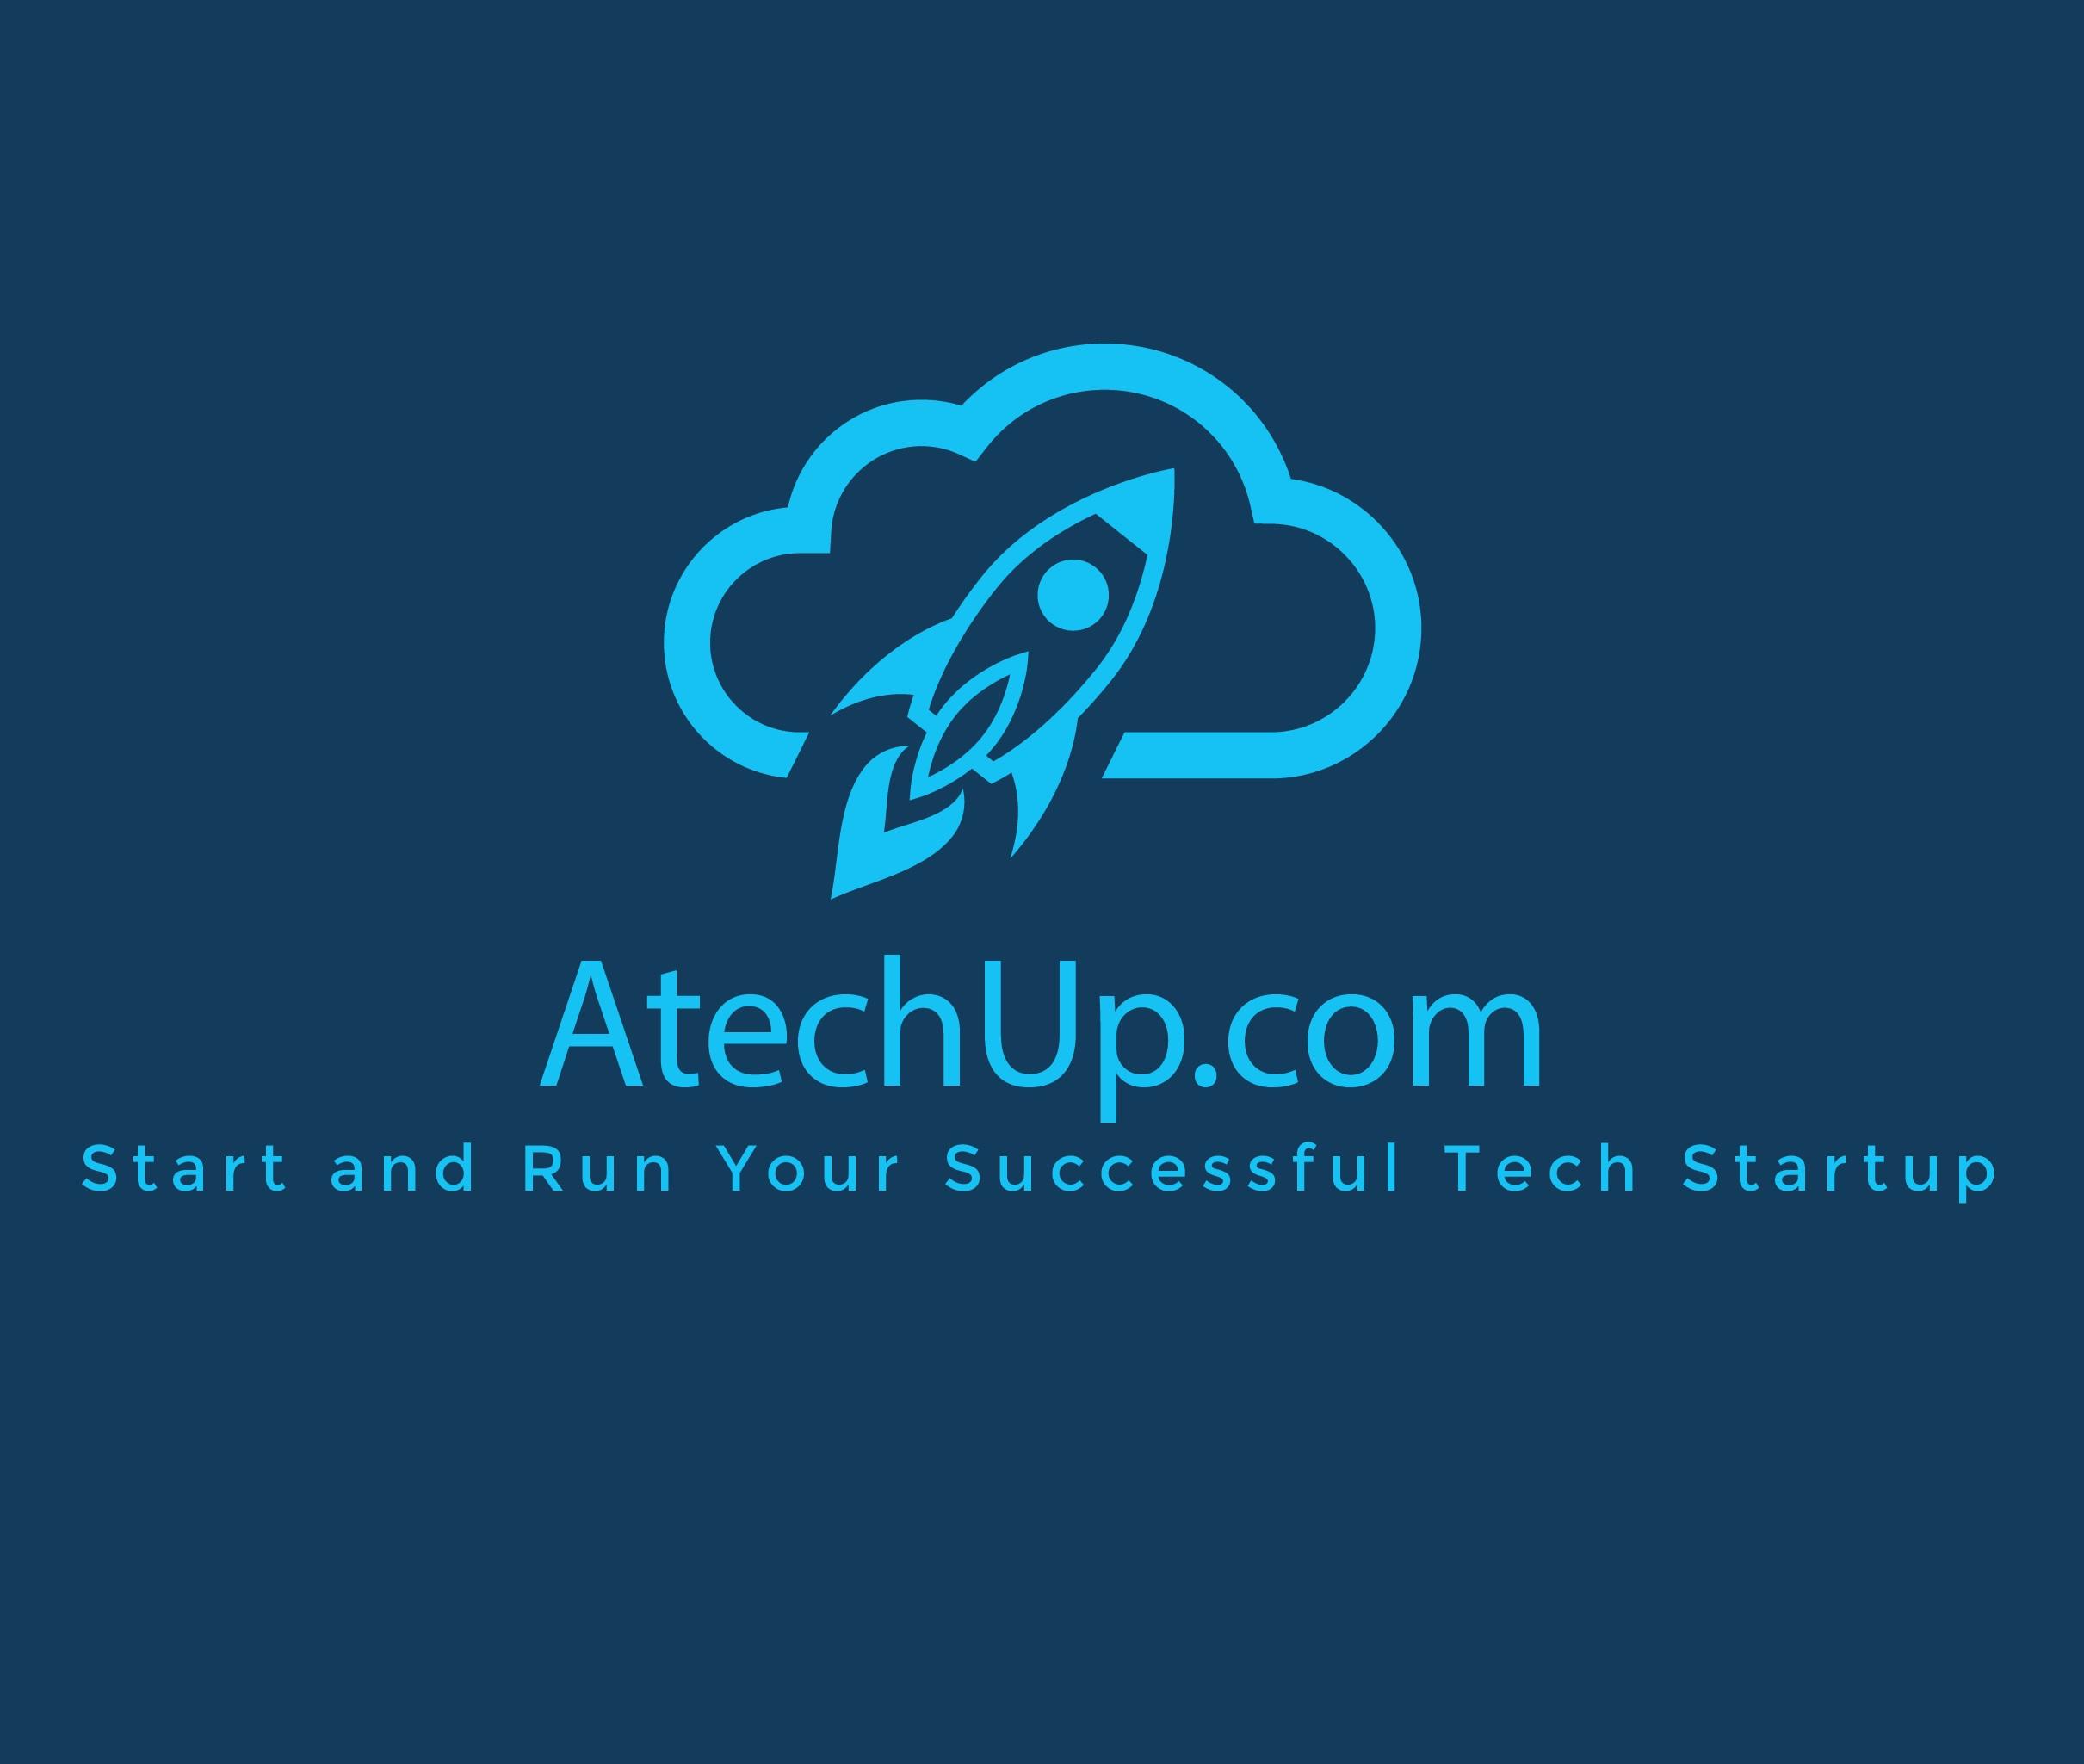 Start and Run a Successful Wearables Tech Startup Business - Phoenix